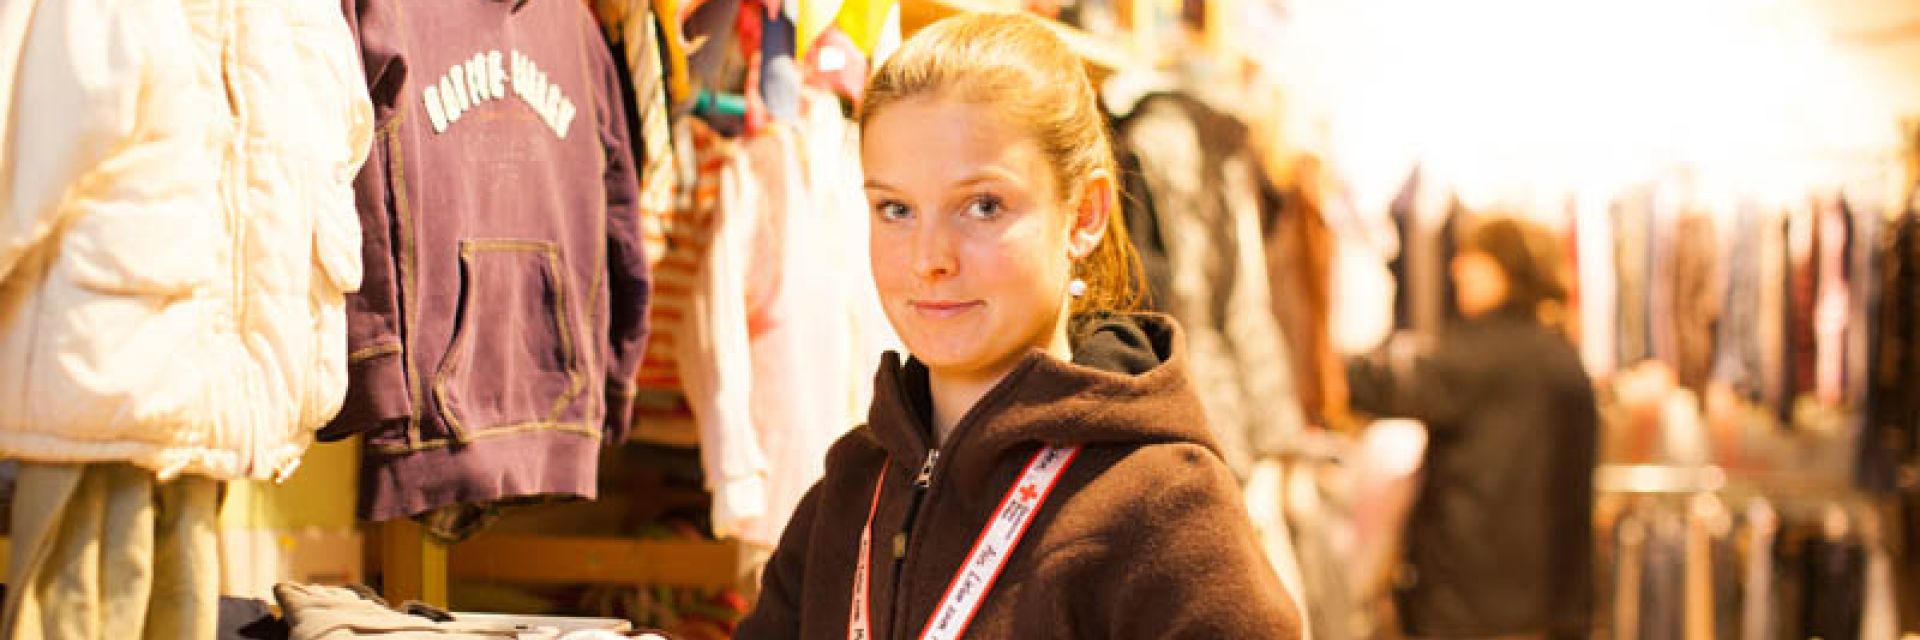 Foto: Eine Mitarbeiterin des Rotkreuz-Shops zeigt einer jungen Frau ein Kleidungsstück mit Kleiderbügel. Die junge Frau freut sich.